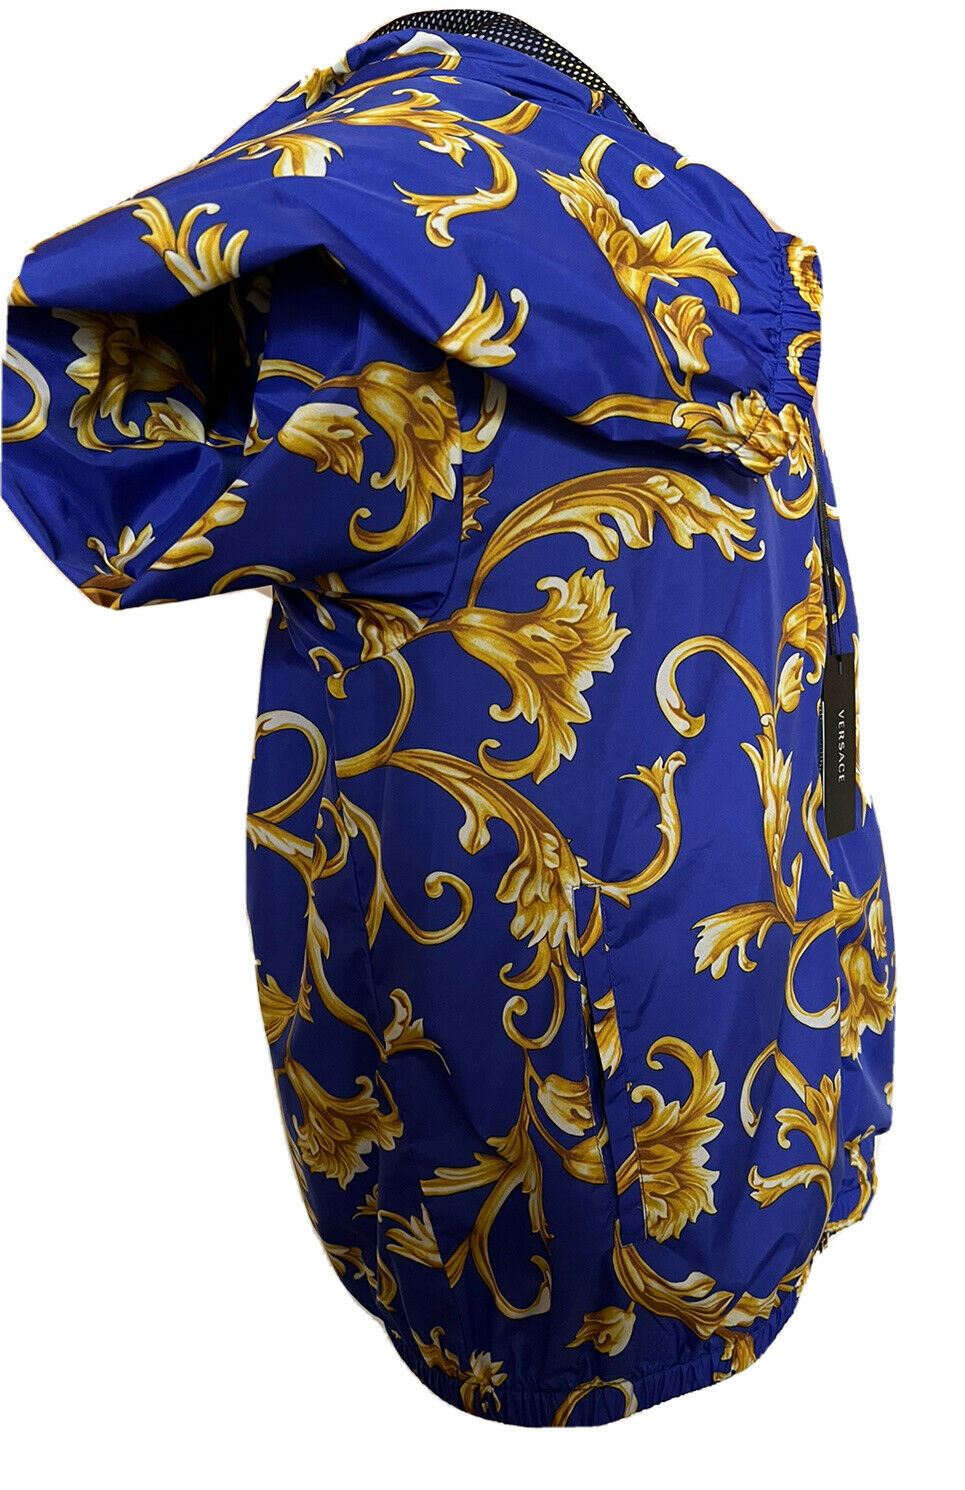 СЗТ $1100 Versace Мужская куртка с капюшоном Barocco Intante Ветровка Синяя 54 США 